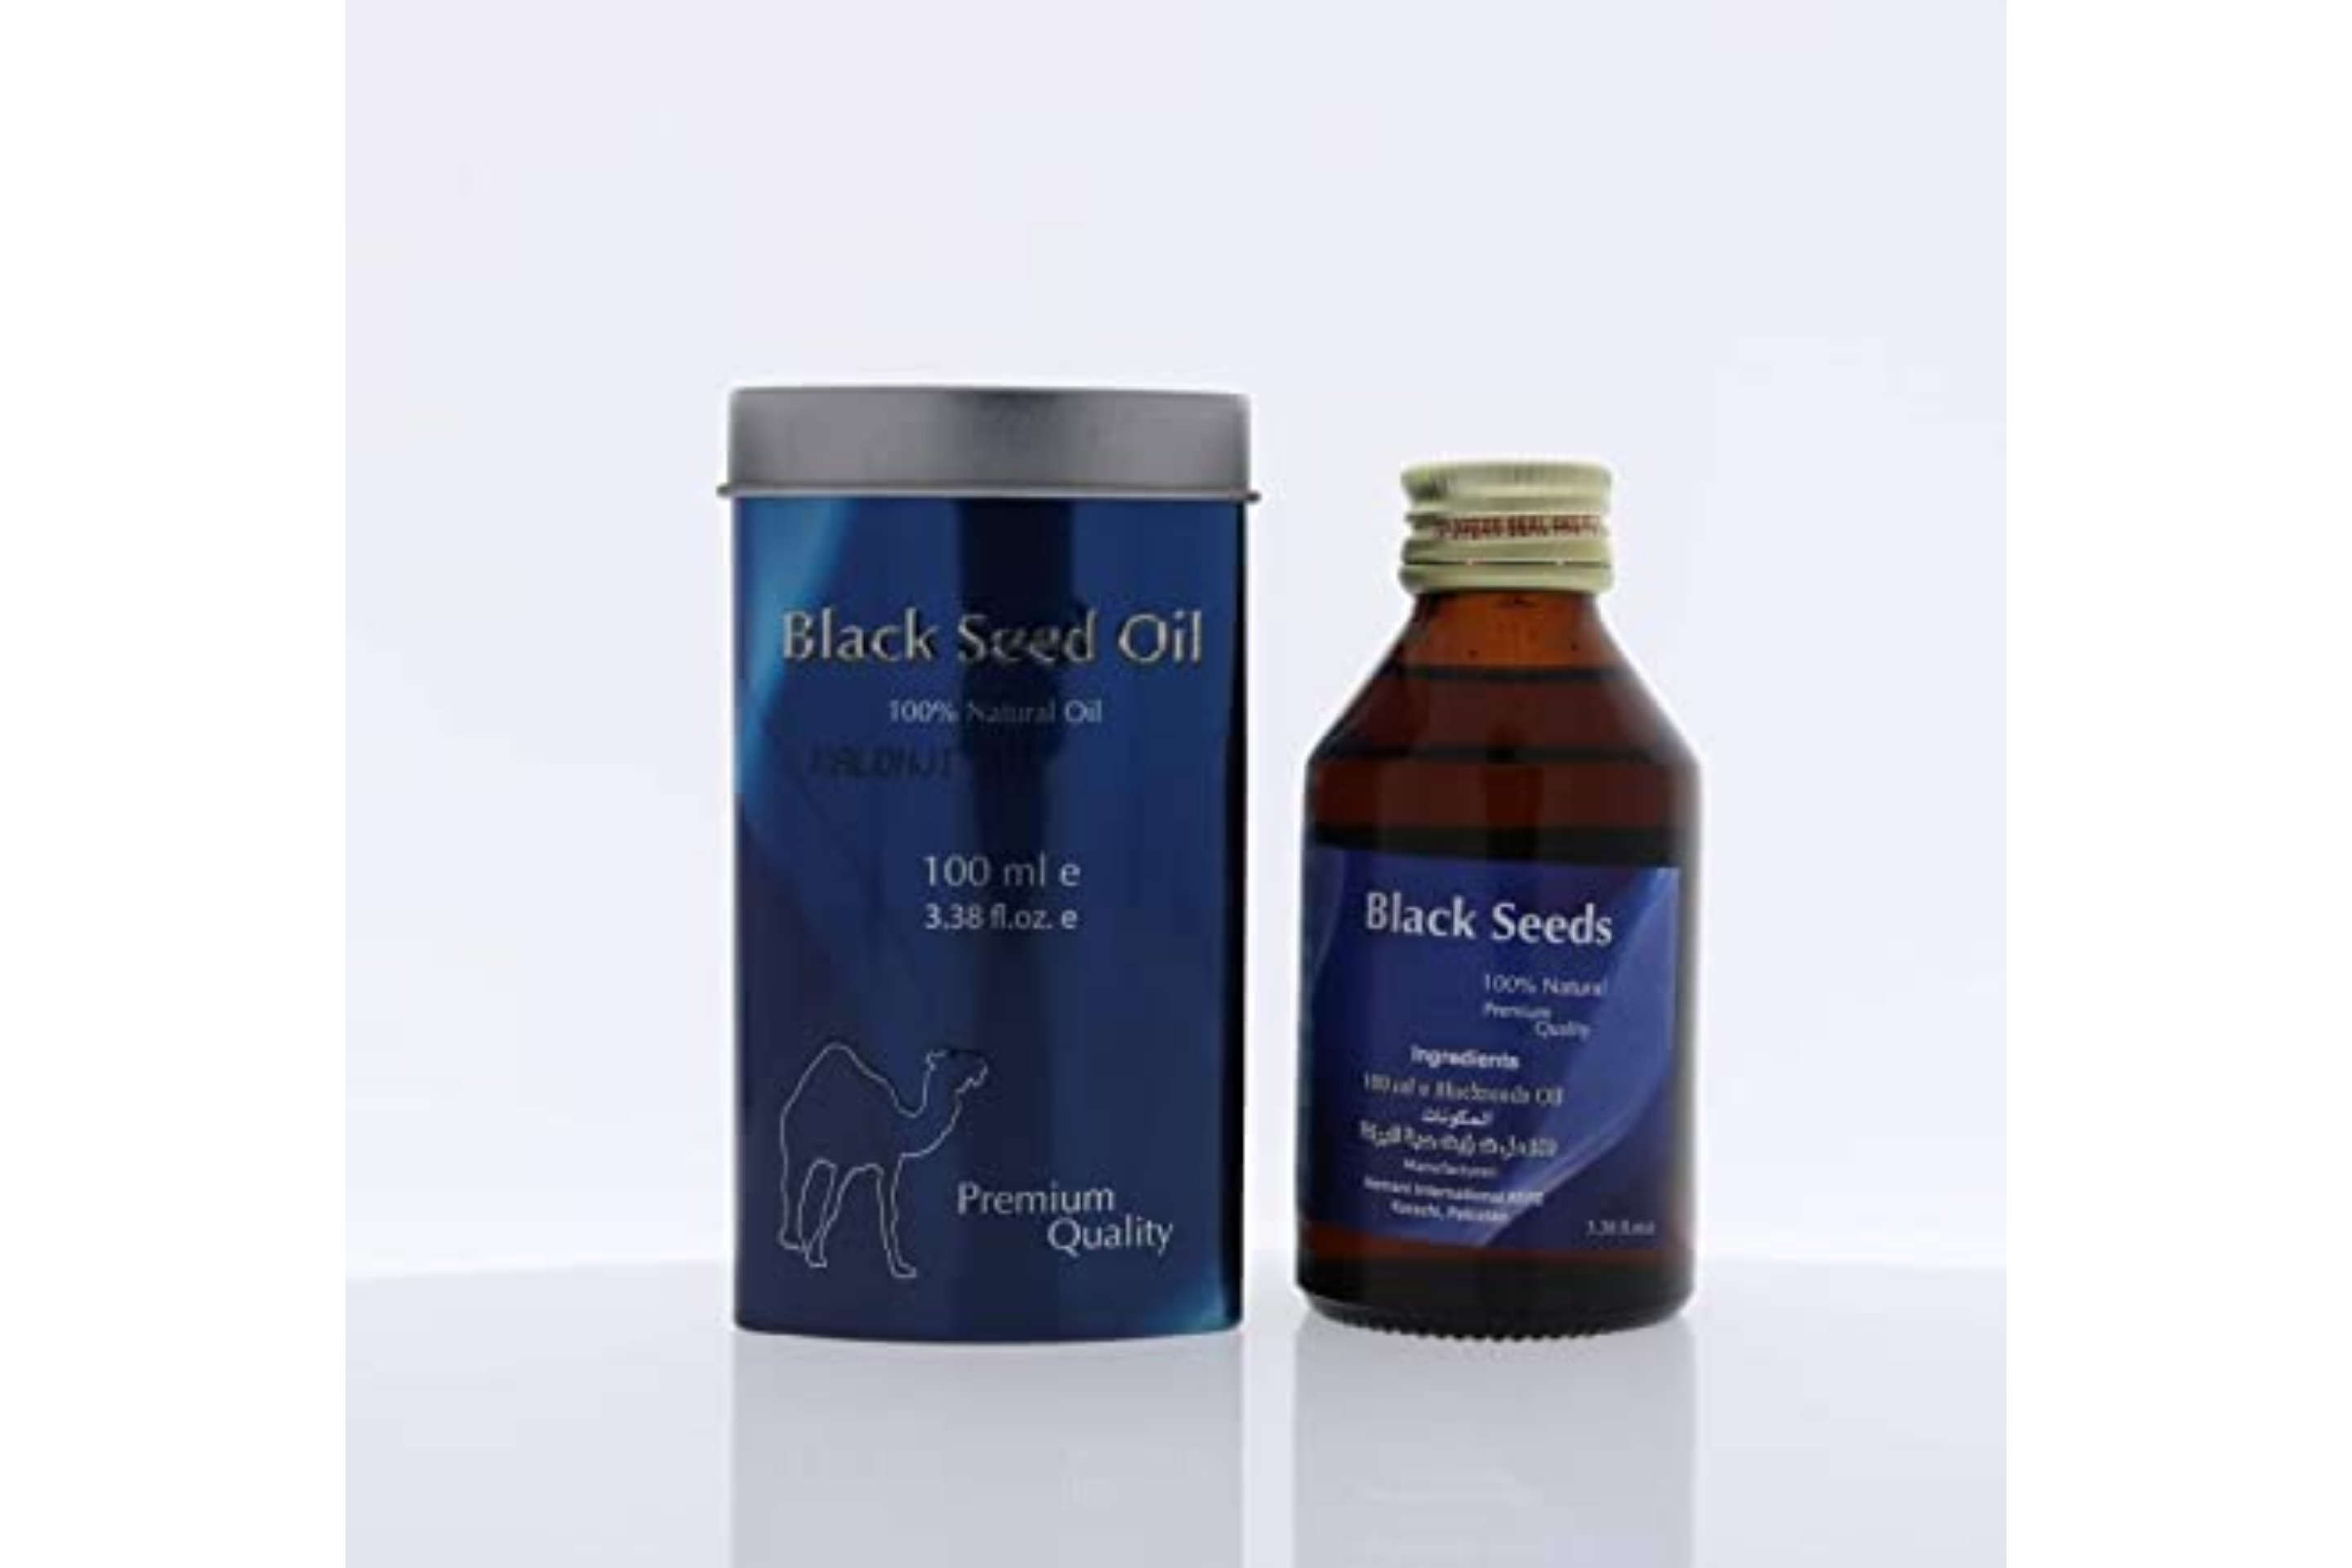 Hemani масло черного. Black Seeds Oil 100ml Hemani. Black Seed Oil 100 ml. Hemani Live natural Black Seed Oil. Масло Black Seed Oil Golden Camel.